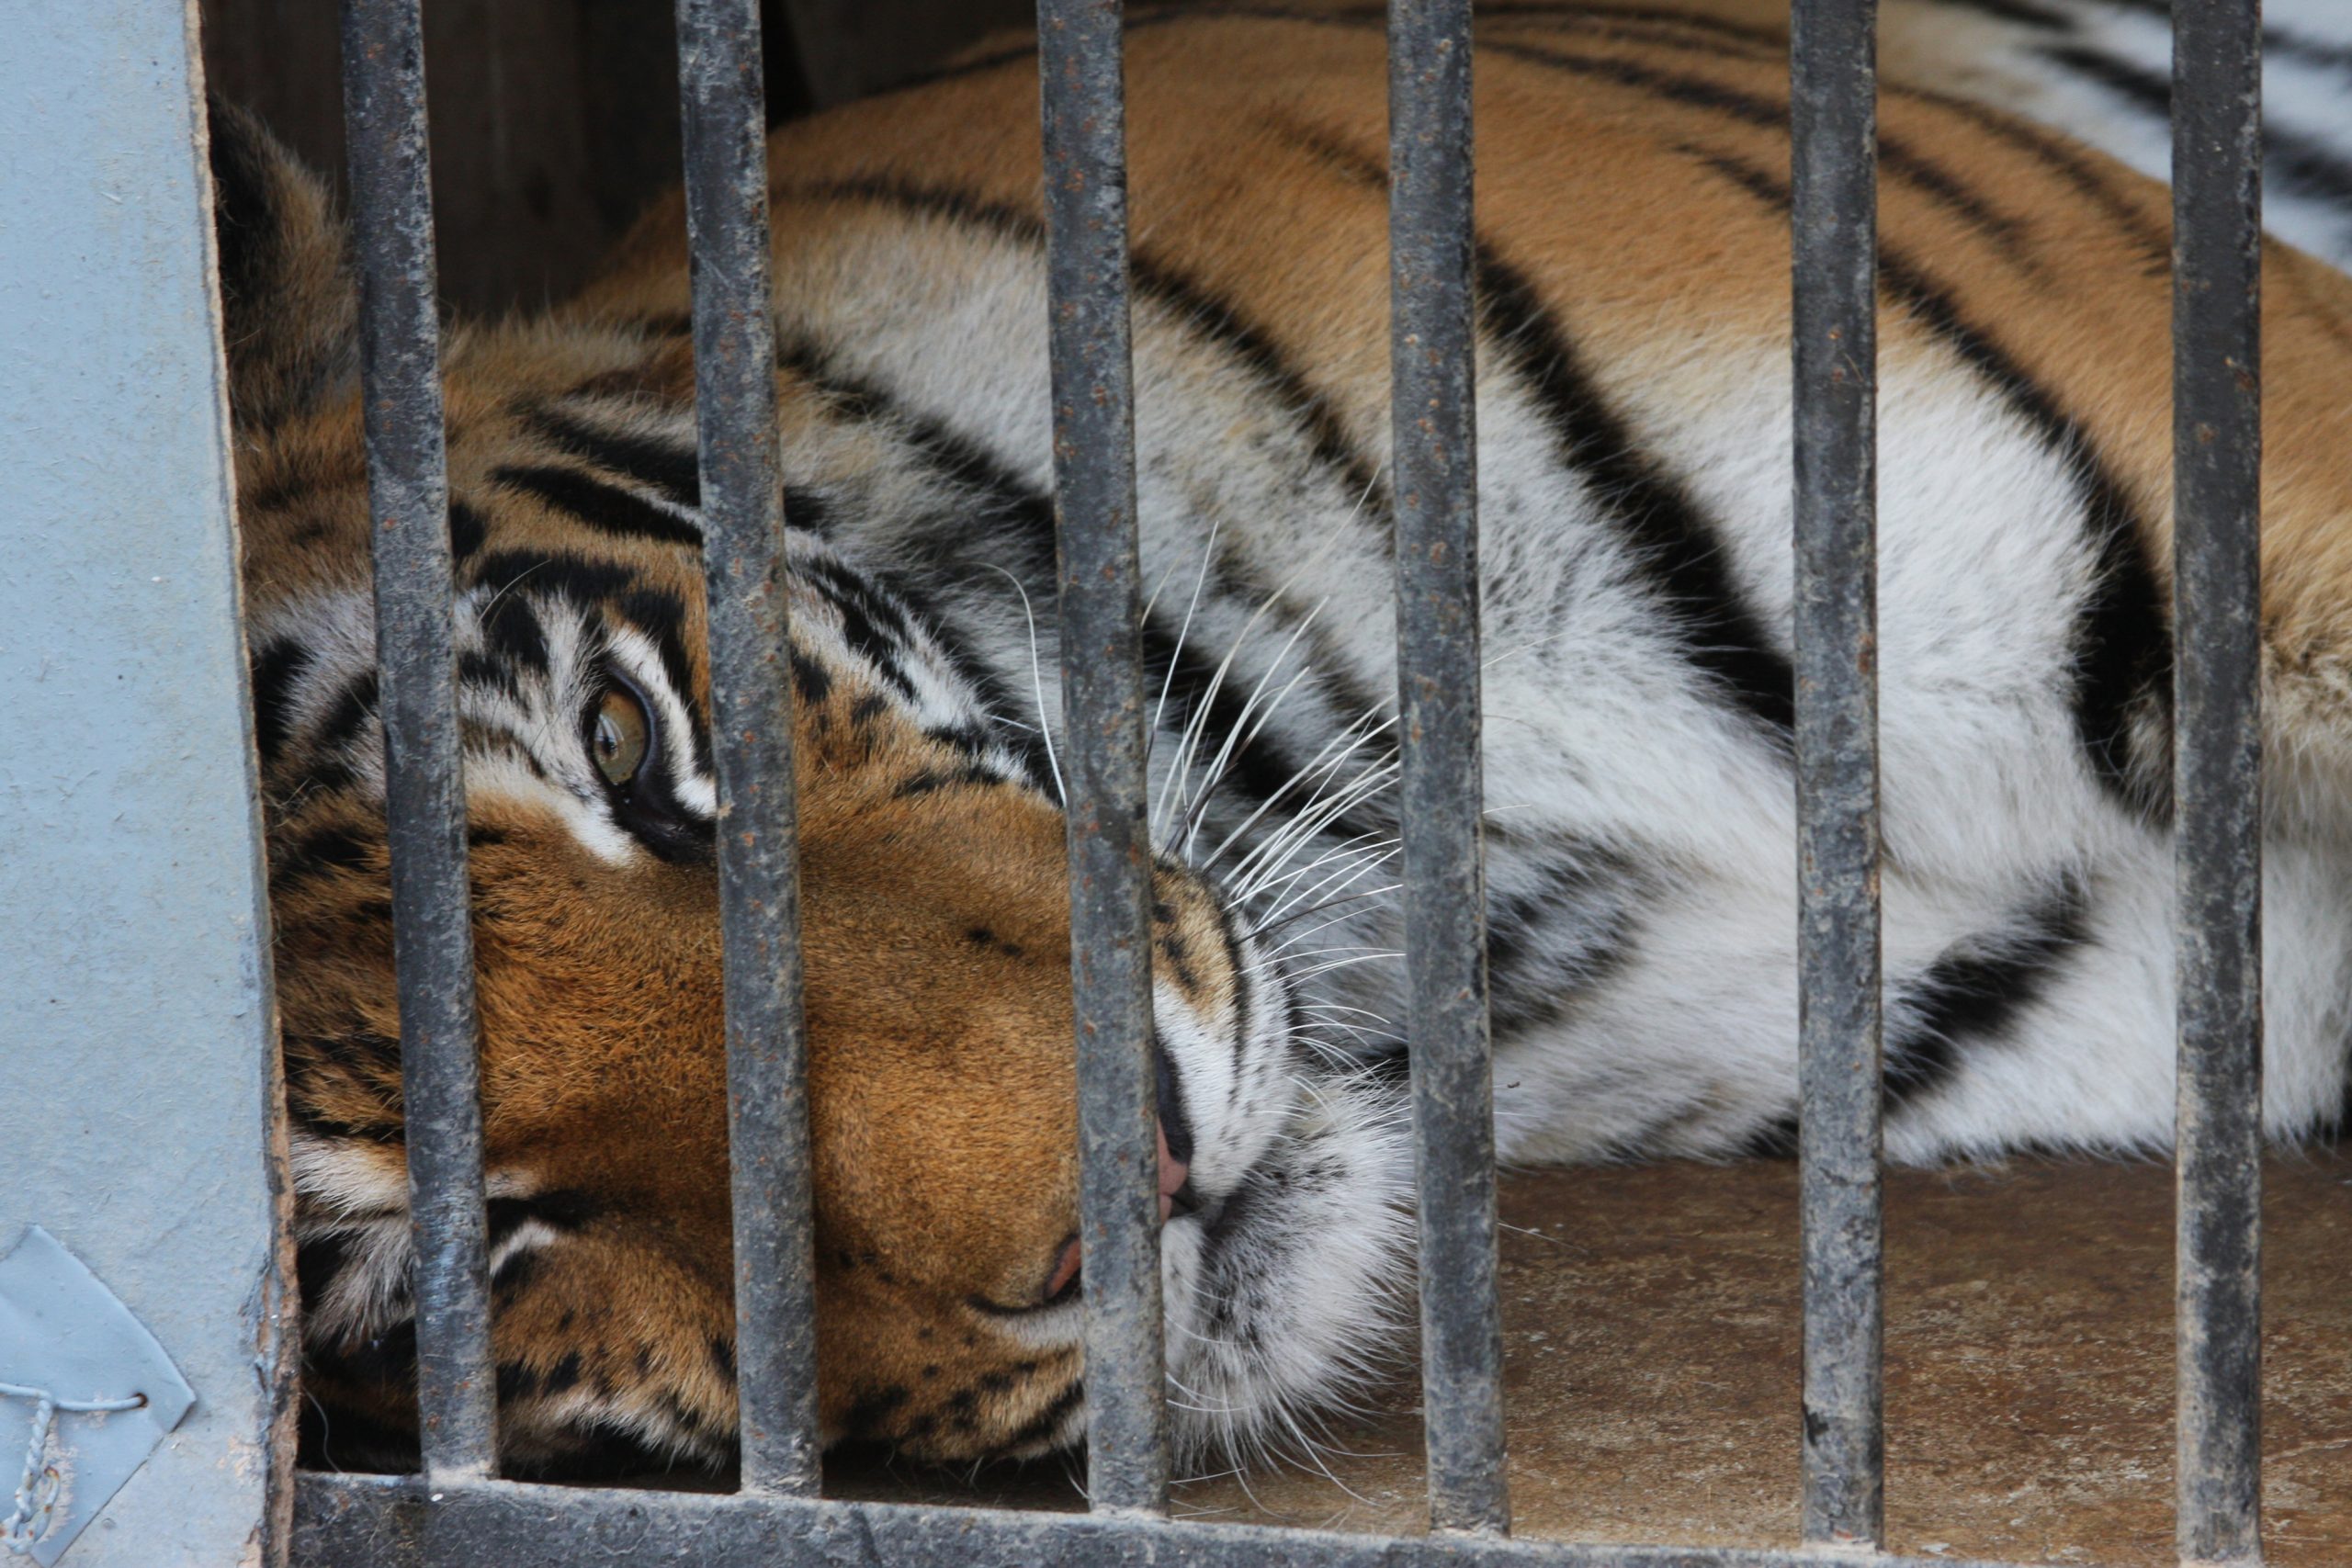 тигр в клетке